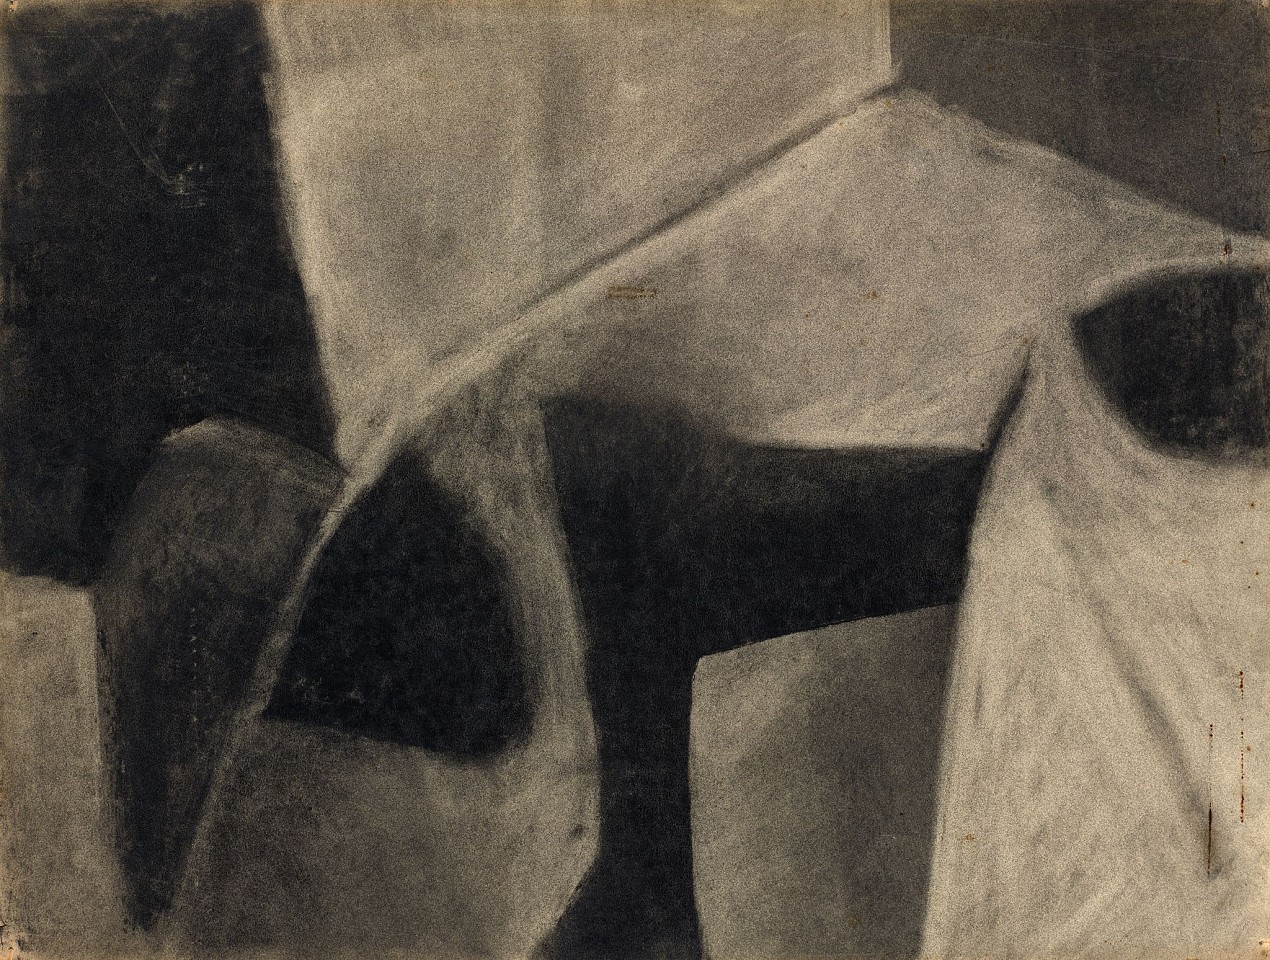 Charlotte Park, Untitled, c. 1952
Charcoal on paper, 18 x 24 in. (45.7 x 61 cm)
PAR-00479